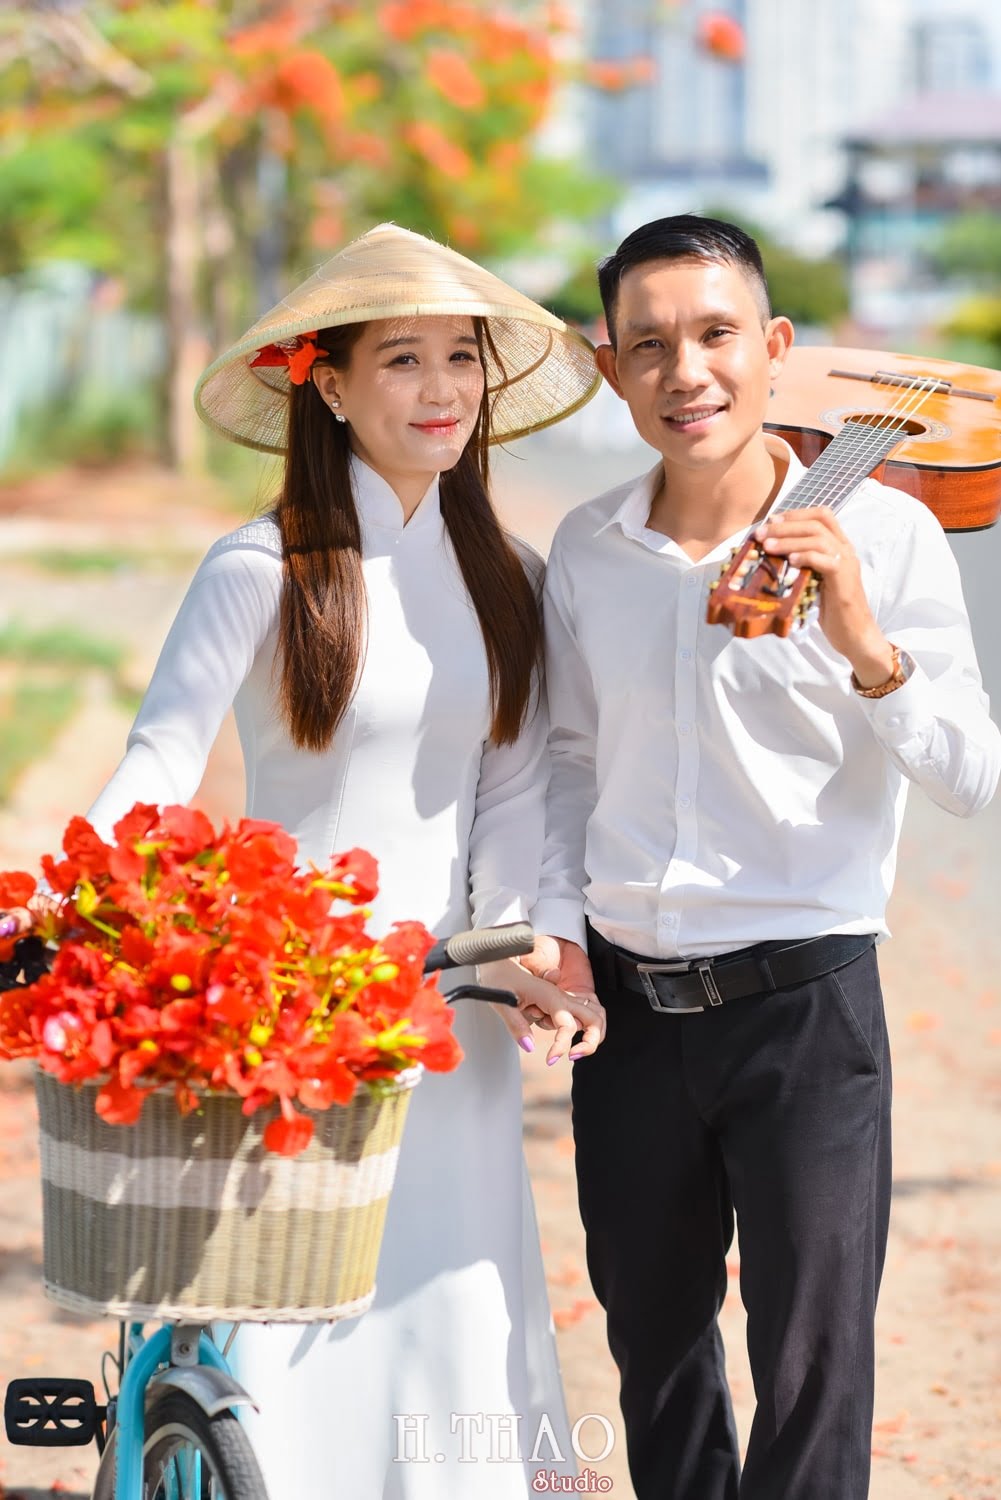 Anh hoa phuong 5 min - Bộ ảnh couple chụp với hoa phượng tuyệt đẹp - HThao Studio